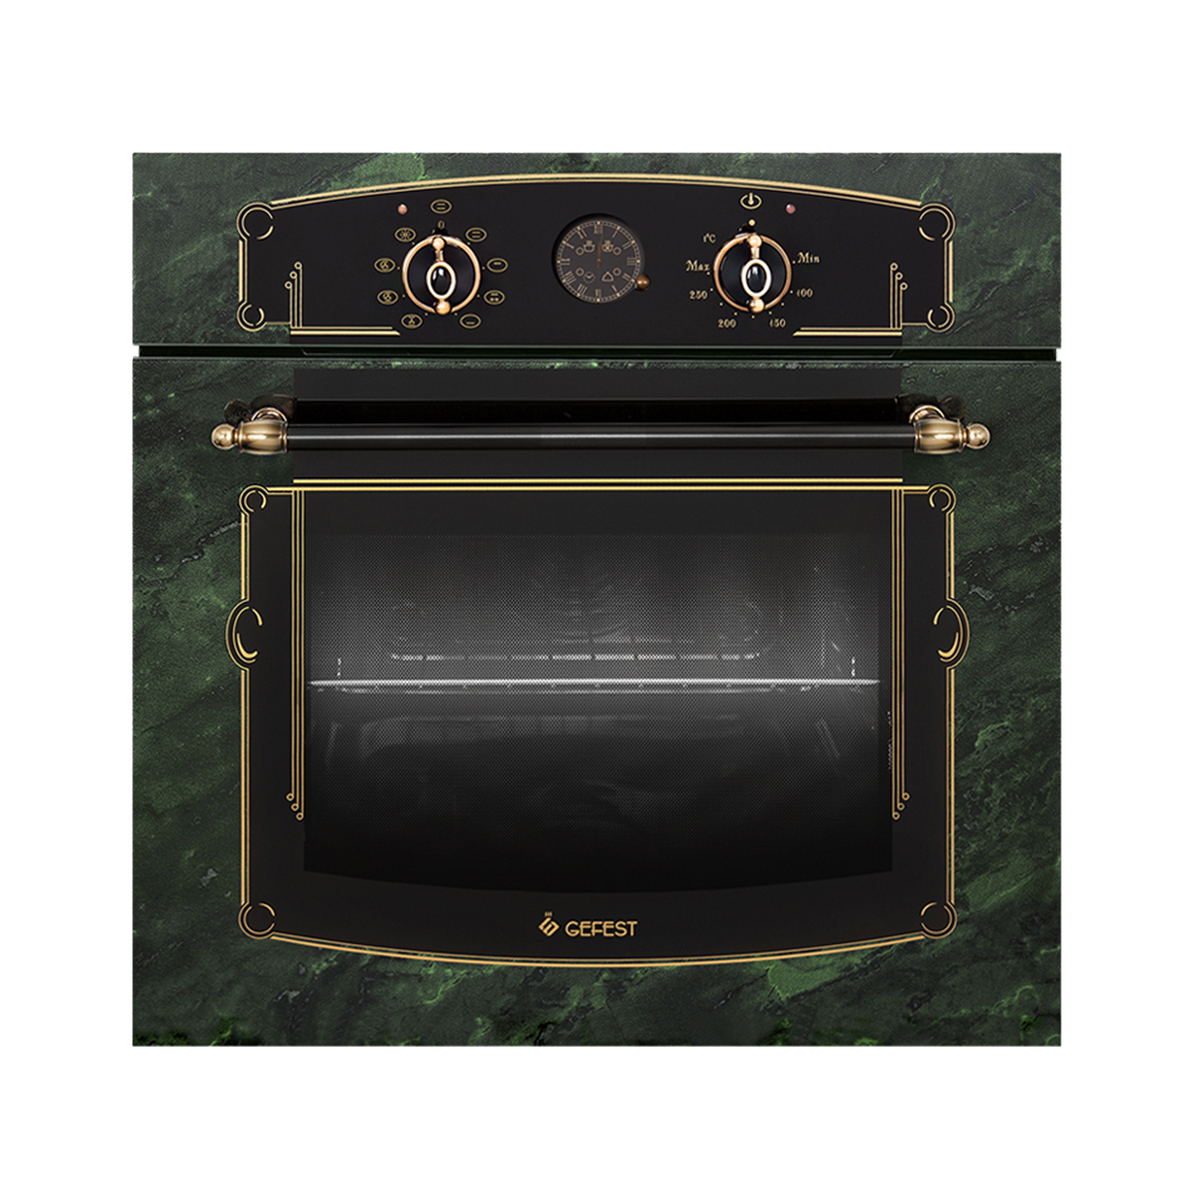 миксер kitchenaid 5ksm156vgepp зеленый золотистый Встраиваемый электрический духовой шкаф GEFEST DA 622-03 K69S зеленый, золотистый